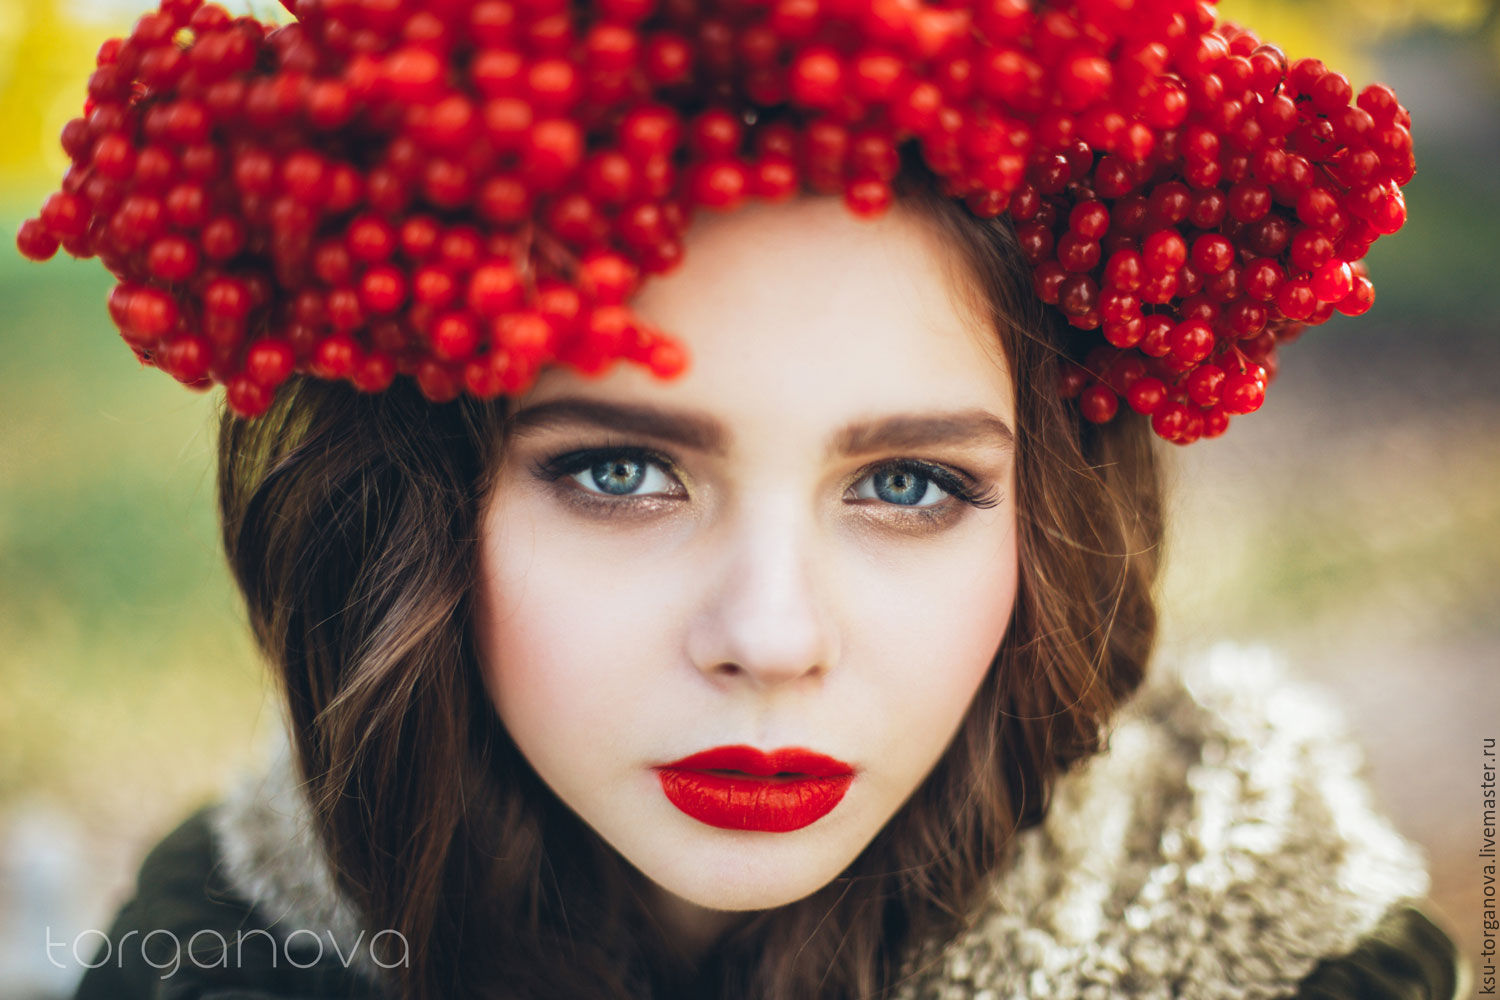 Картинки девушка с ягодами